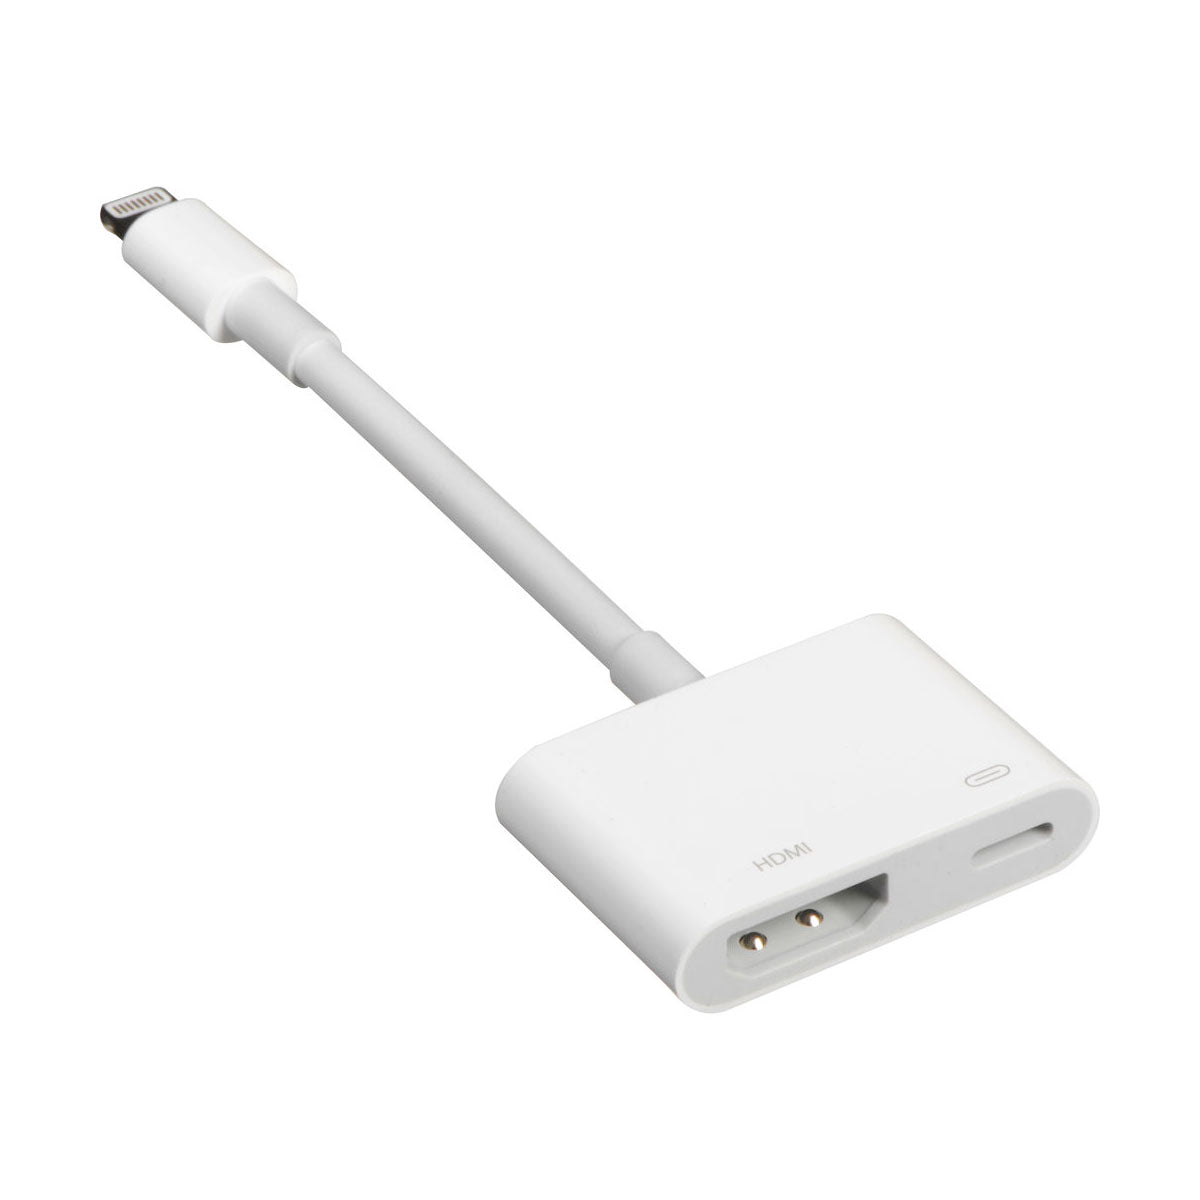  Apple Lightning to Digital AV Adapter : Electronics